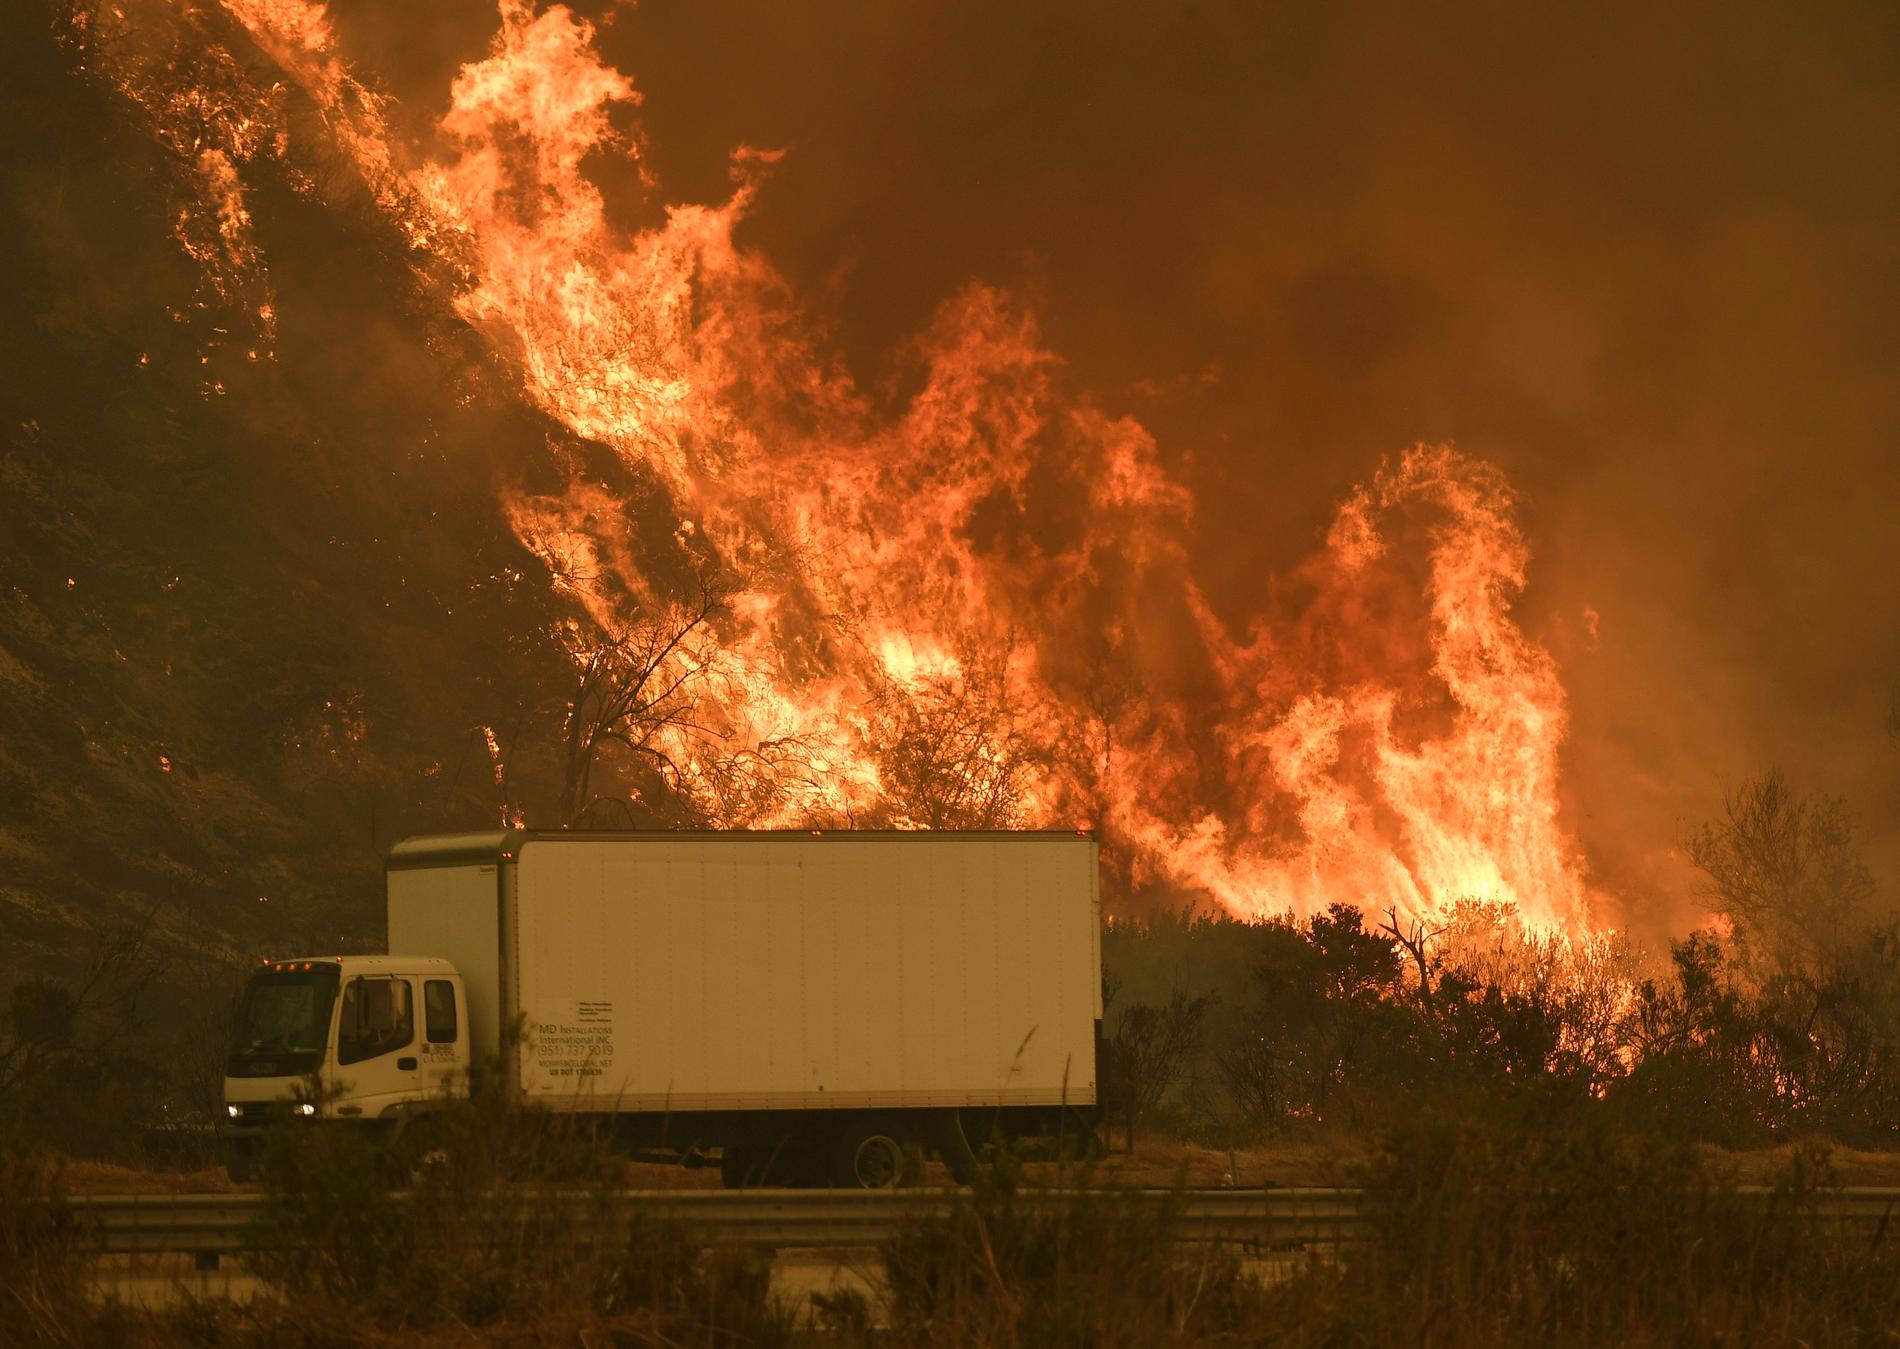 Elden hotar trafiken längs Highway 101 nära Ventura.